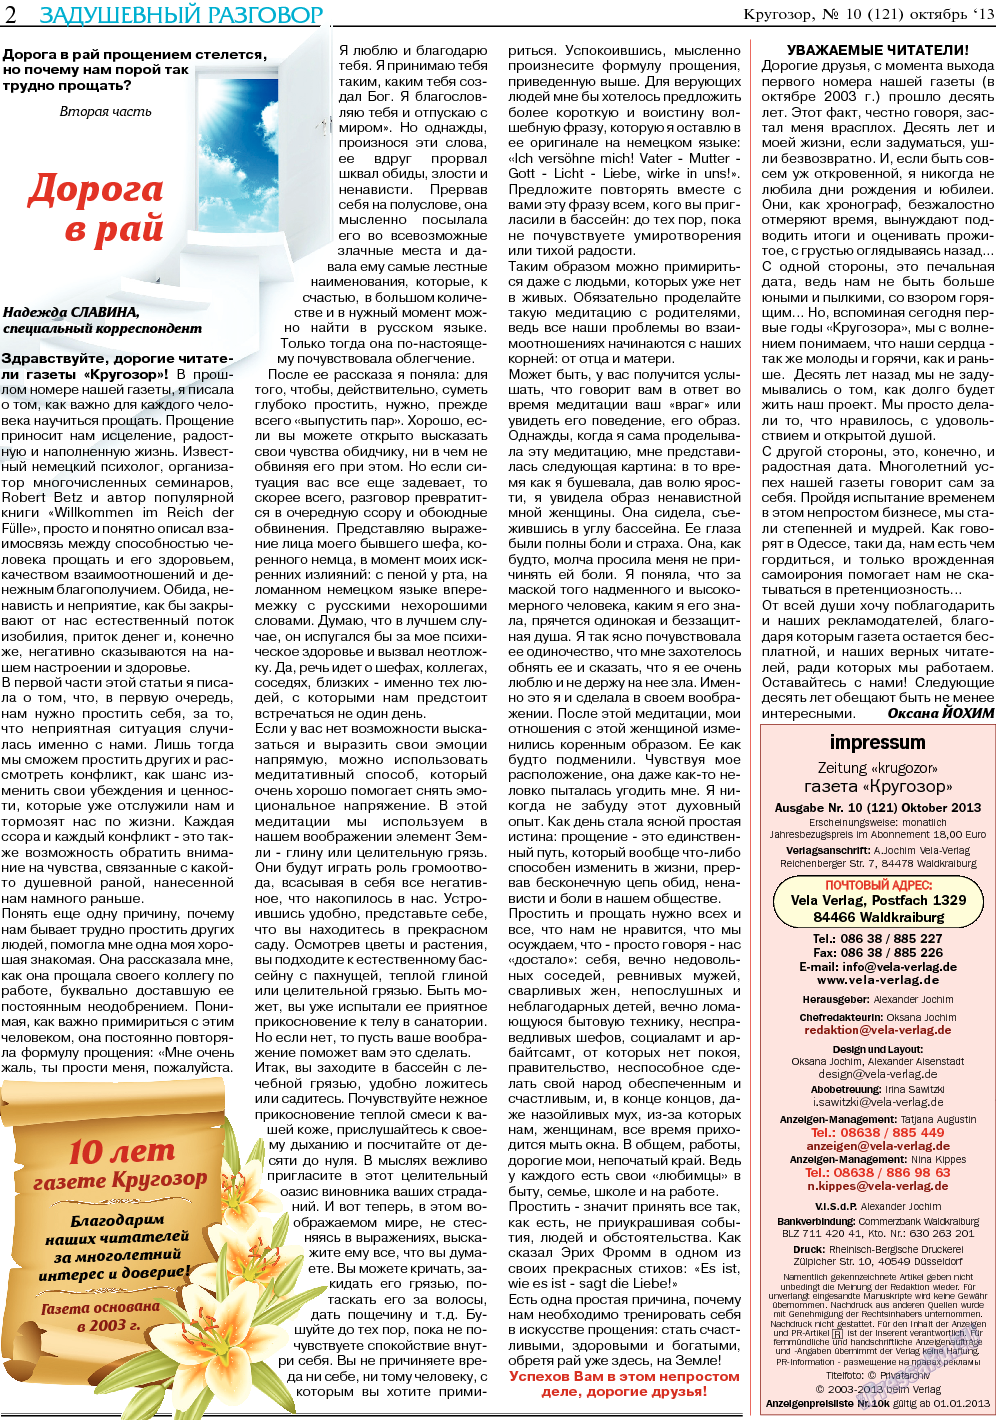 Кругозор, газета. 2013 №10 стр.2